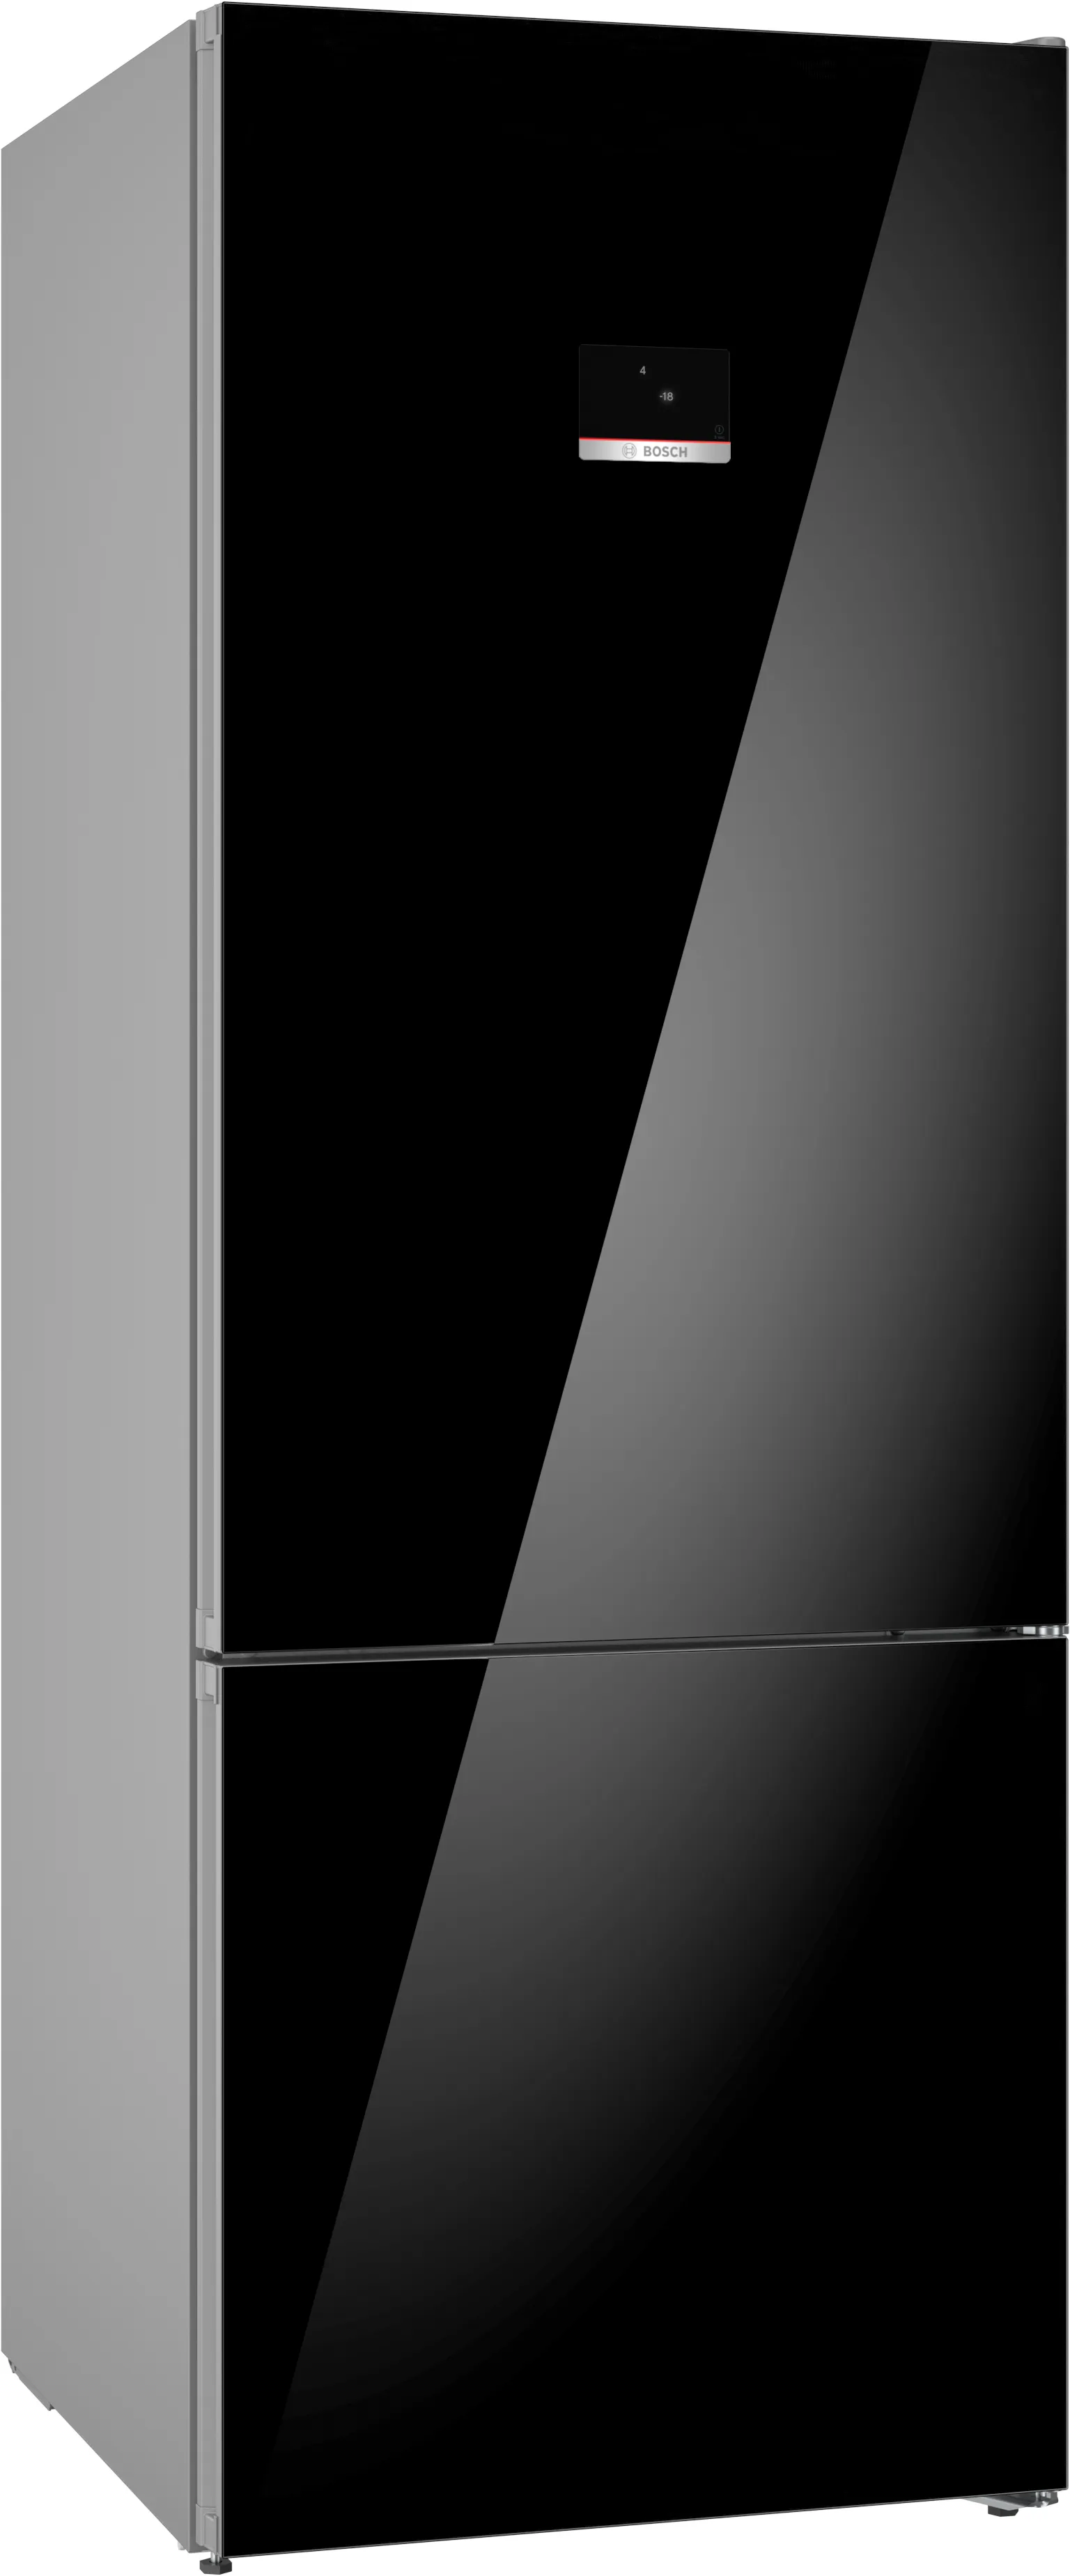 ซีรี่ 6 ตู้เย็นพร้อมช่องแช่แข็งด้านล่างแบบวางลอยตัว 193 x 70 cm สีดำ 